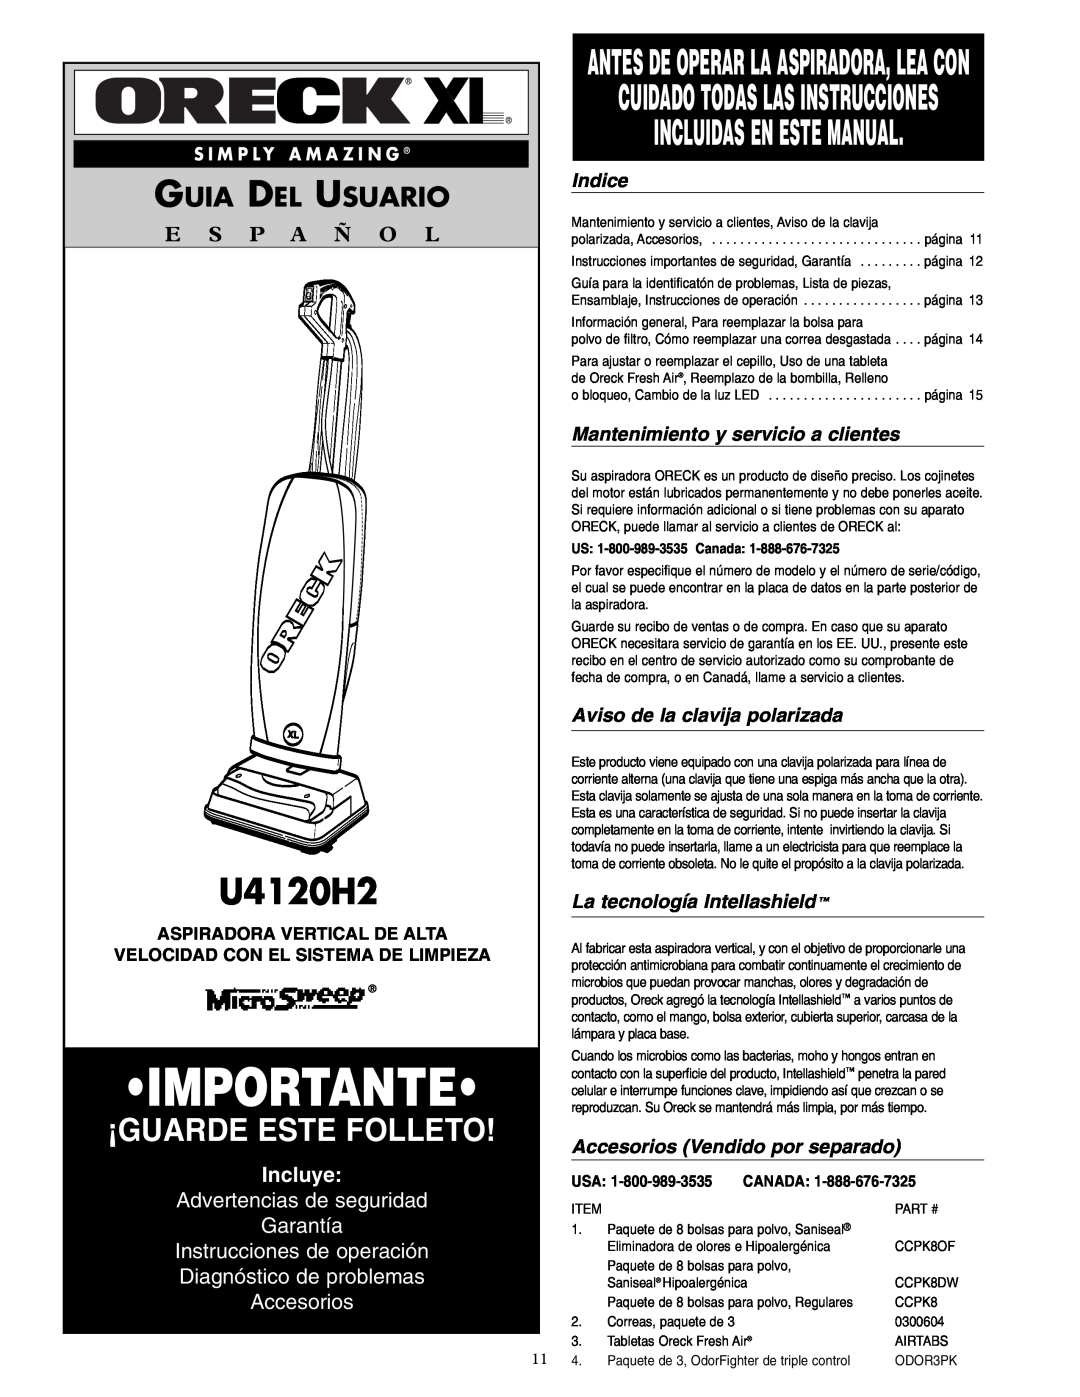 Oreck U4120H2 Importante, ¡Guarde Este Folleto, Incluidas En Este Manual, Guia Del Usuario, E S P A Ñ O L, Incluye, Indice 